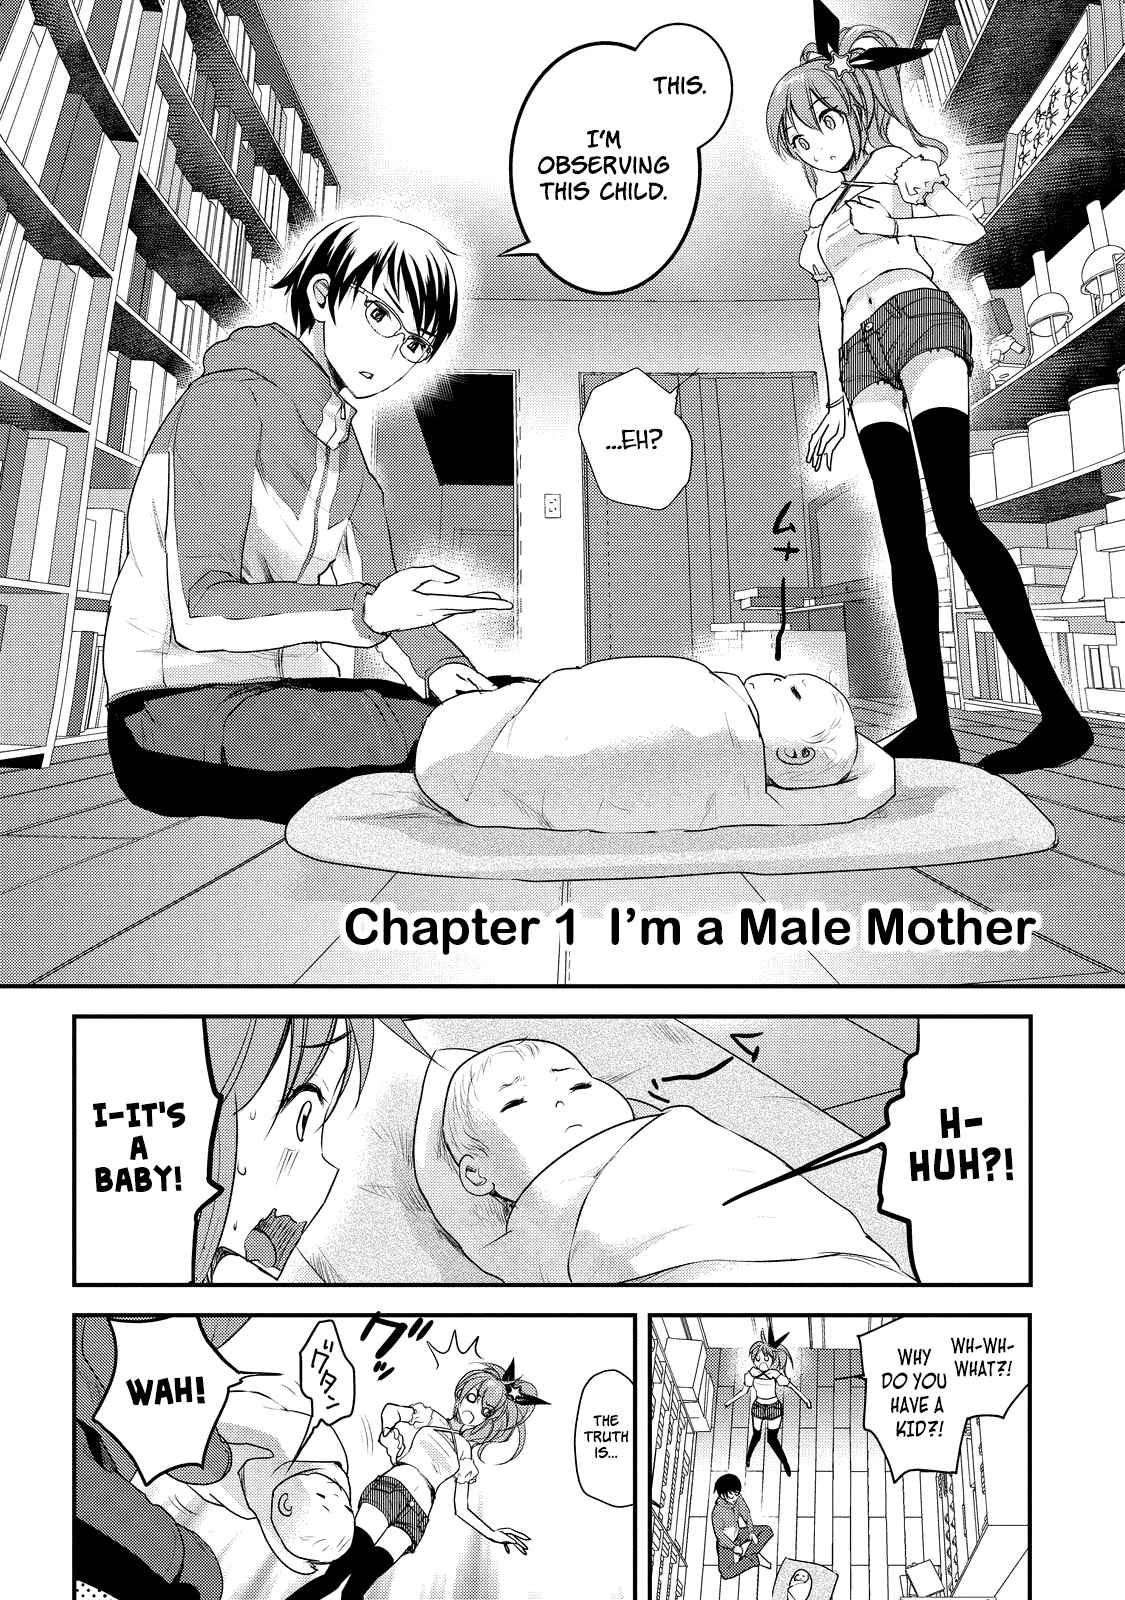 Chichi no Jikan Vol. 1 Ch. 1 I'm a Male Mother